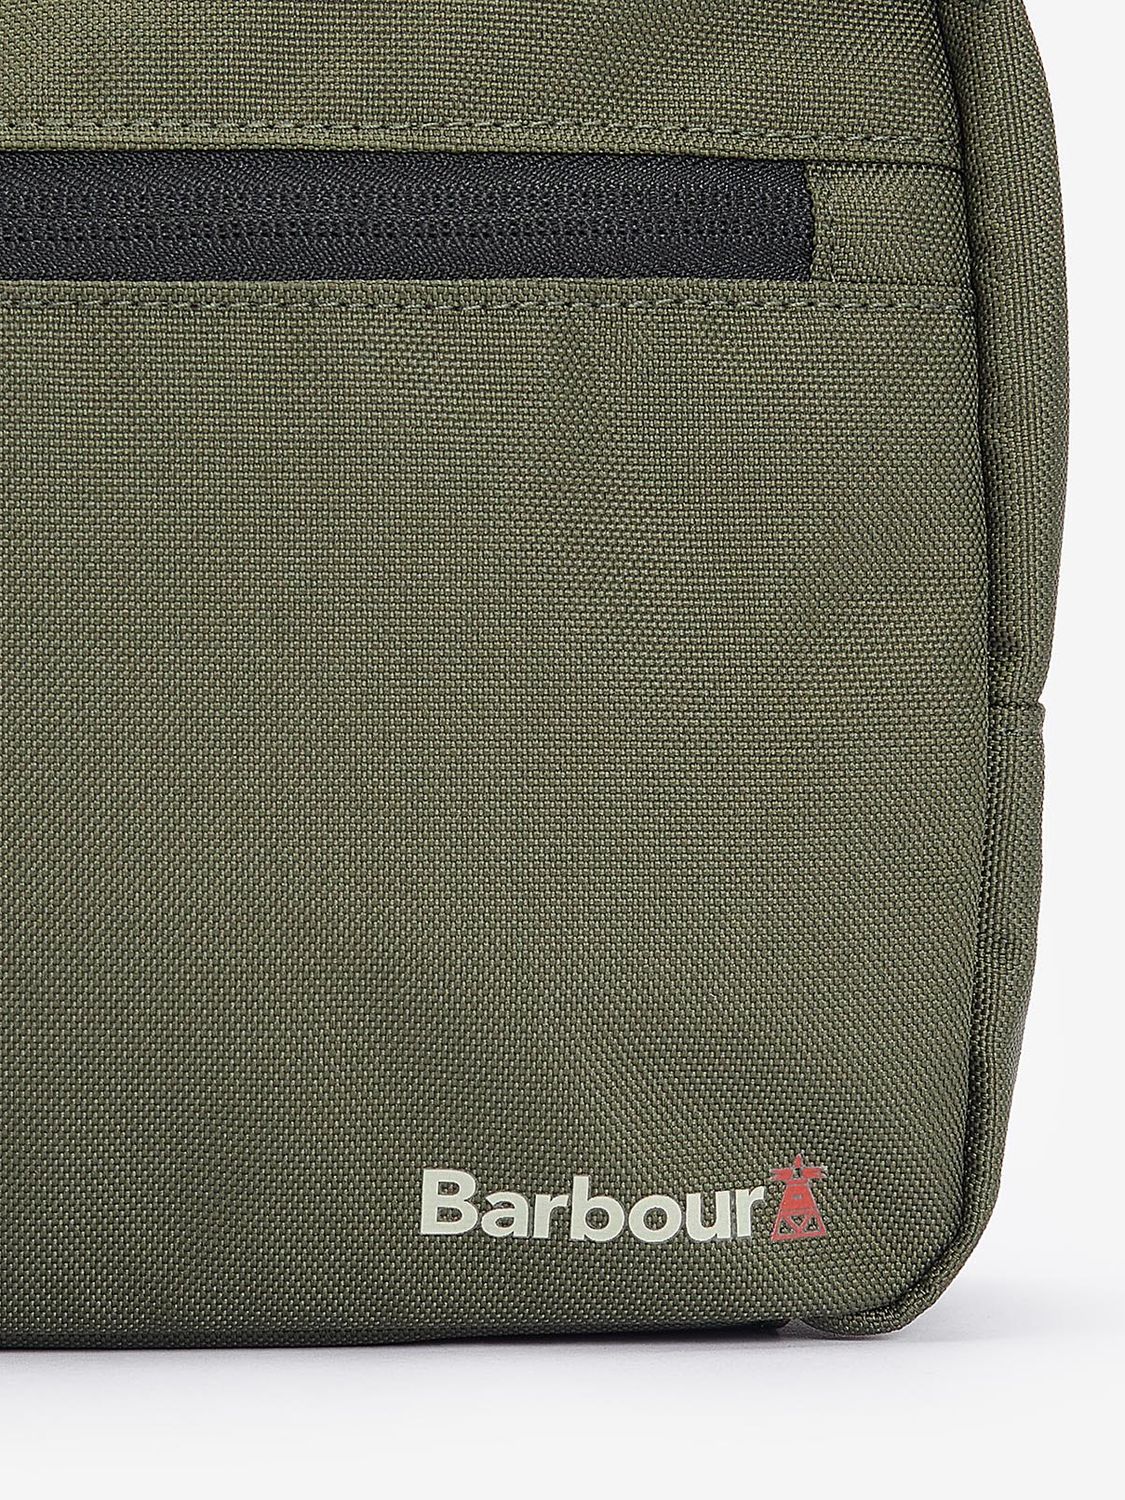 Barbour Arwin Wash Bag, Olive/Black